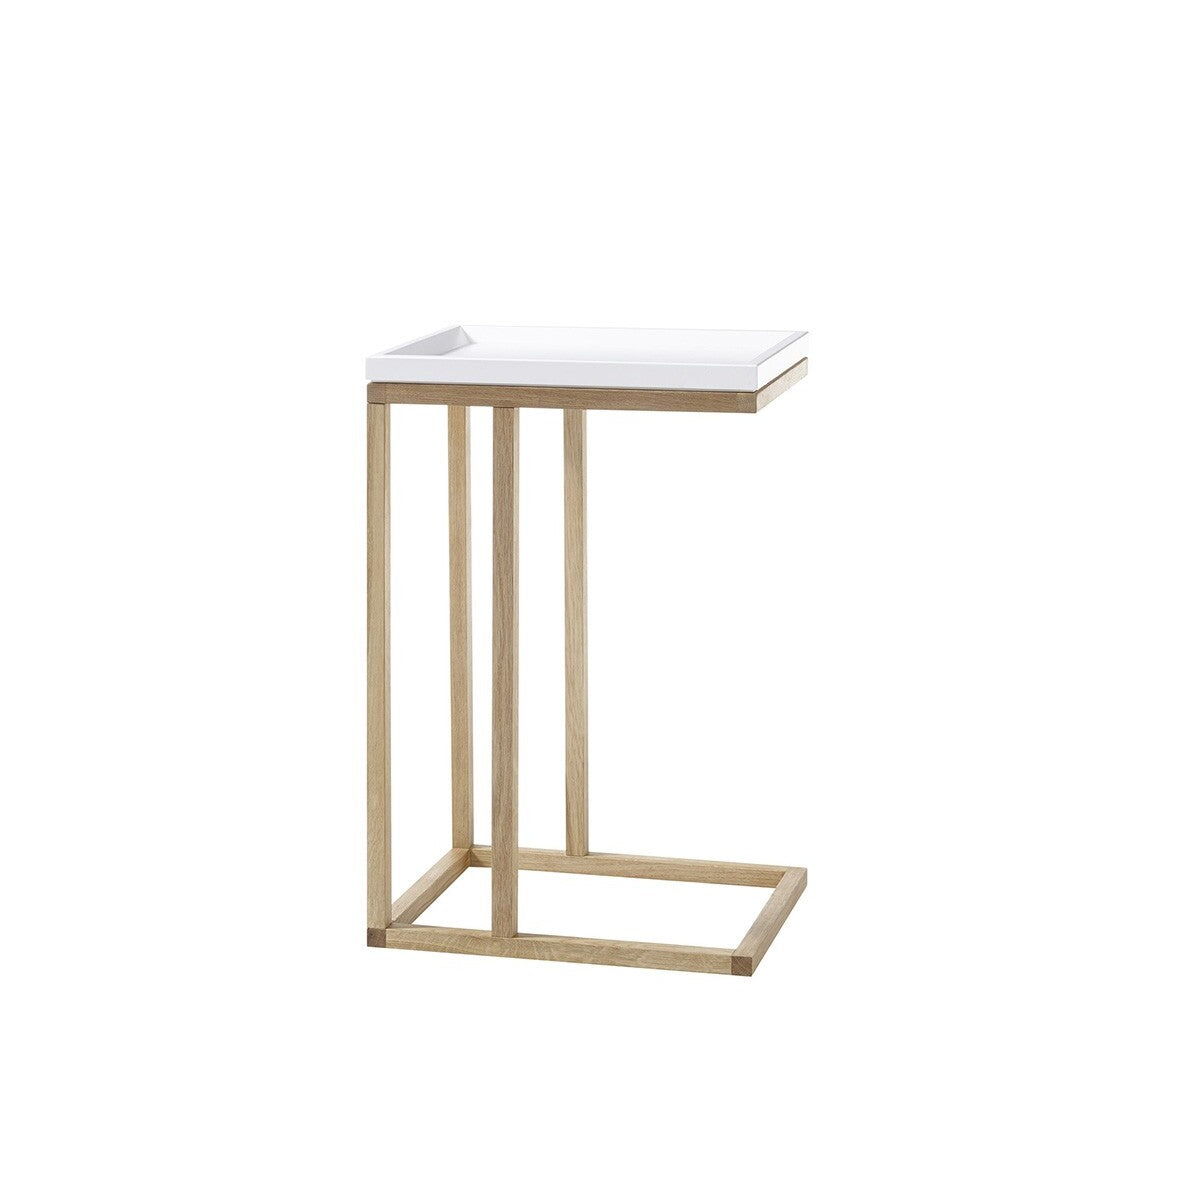 Přístavný stolek Juvena (bílá)